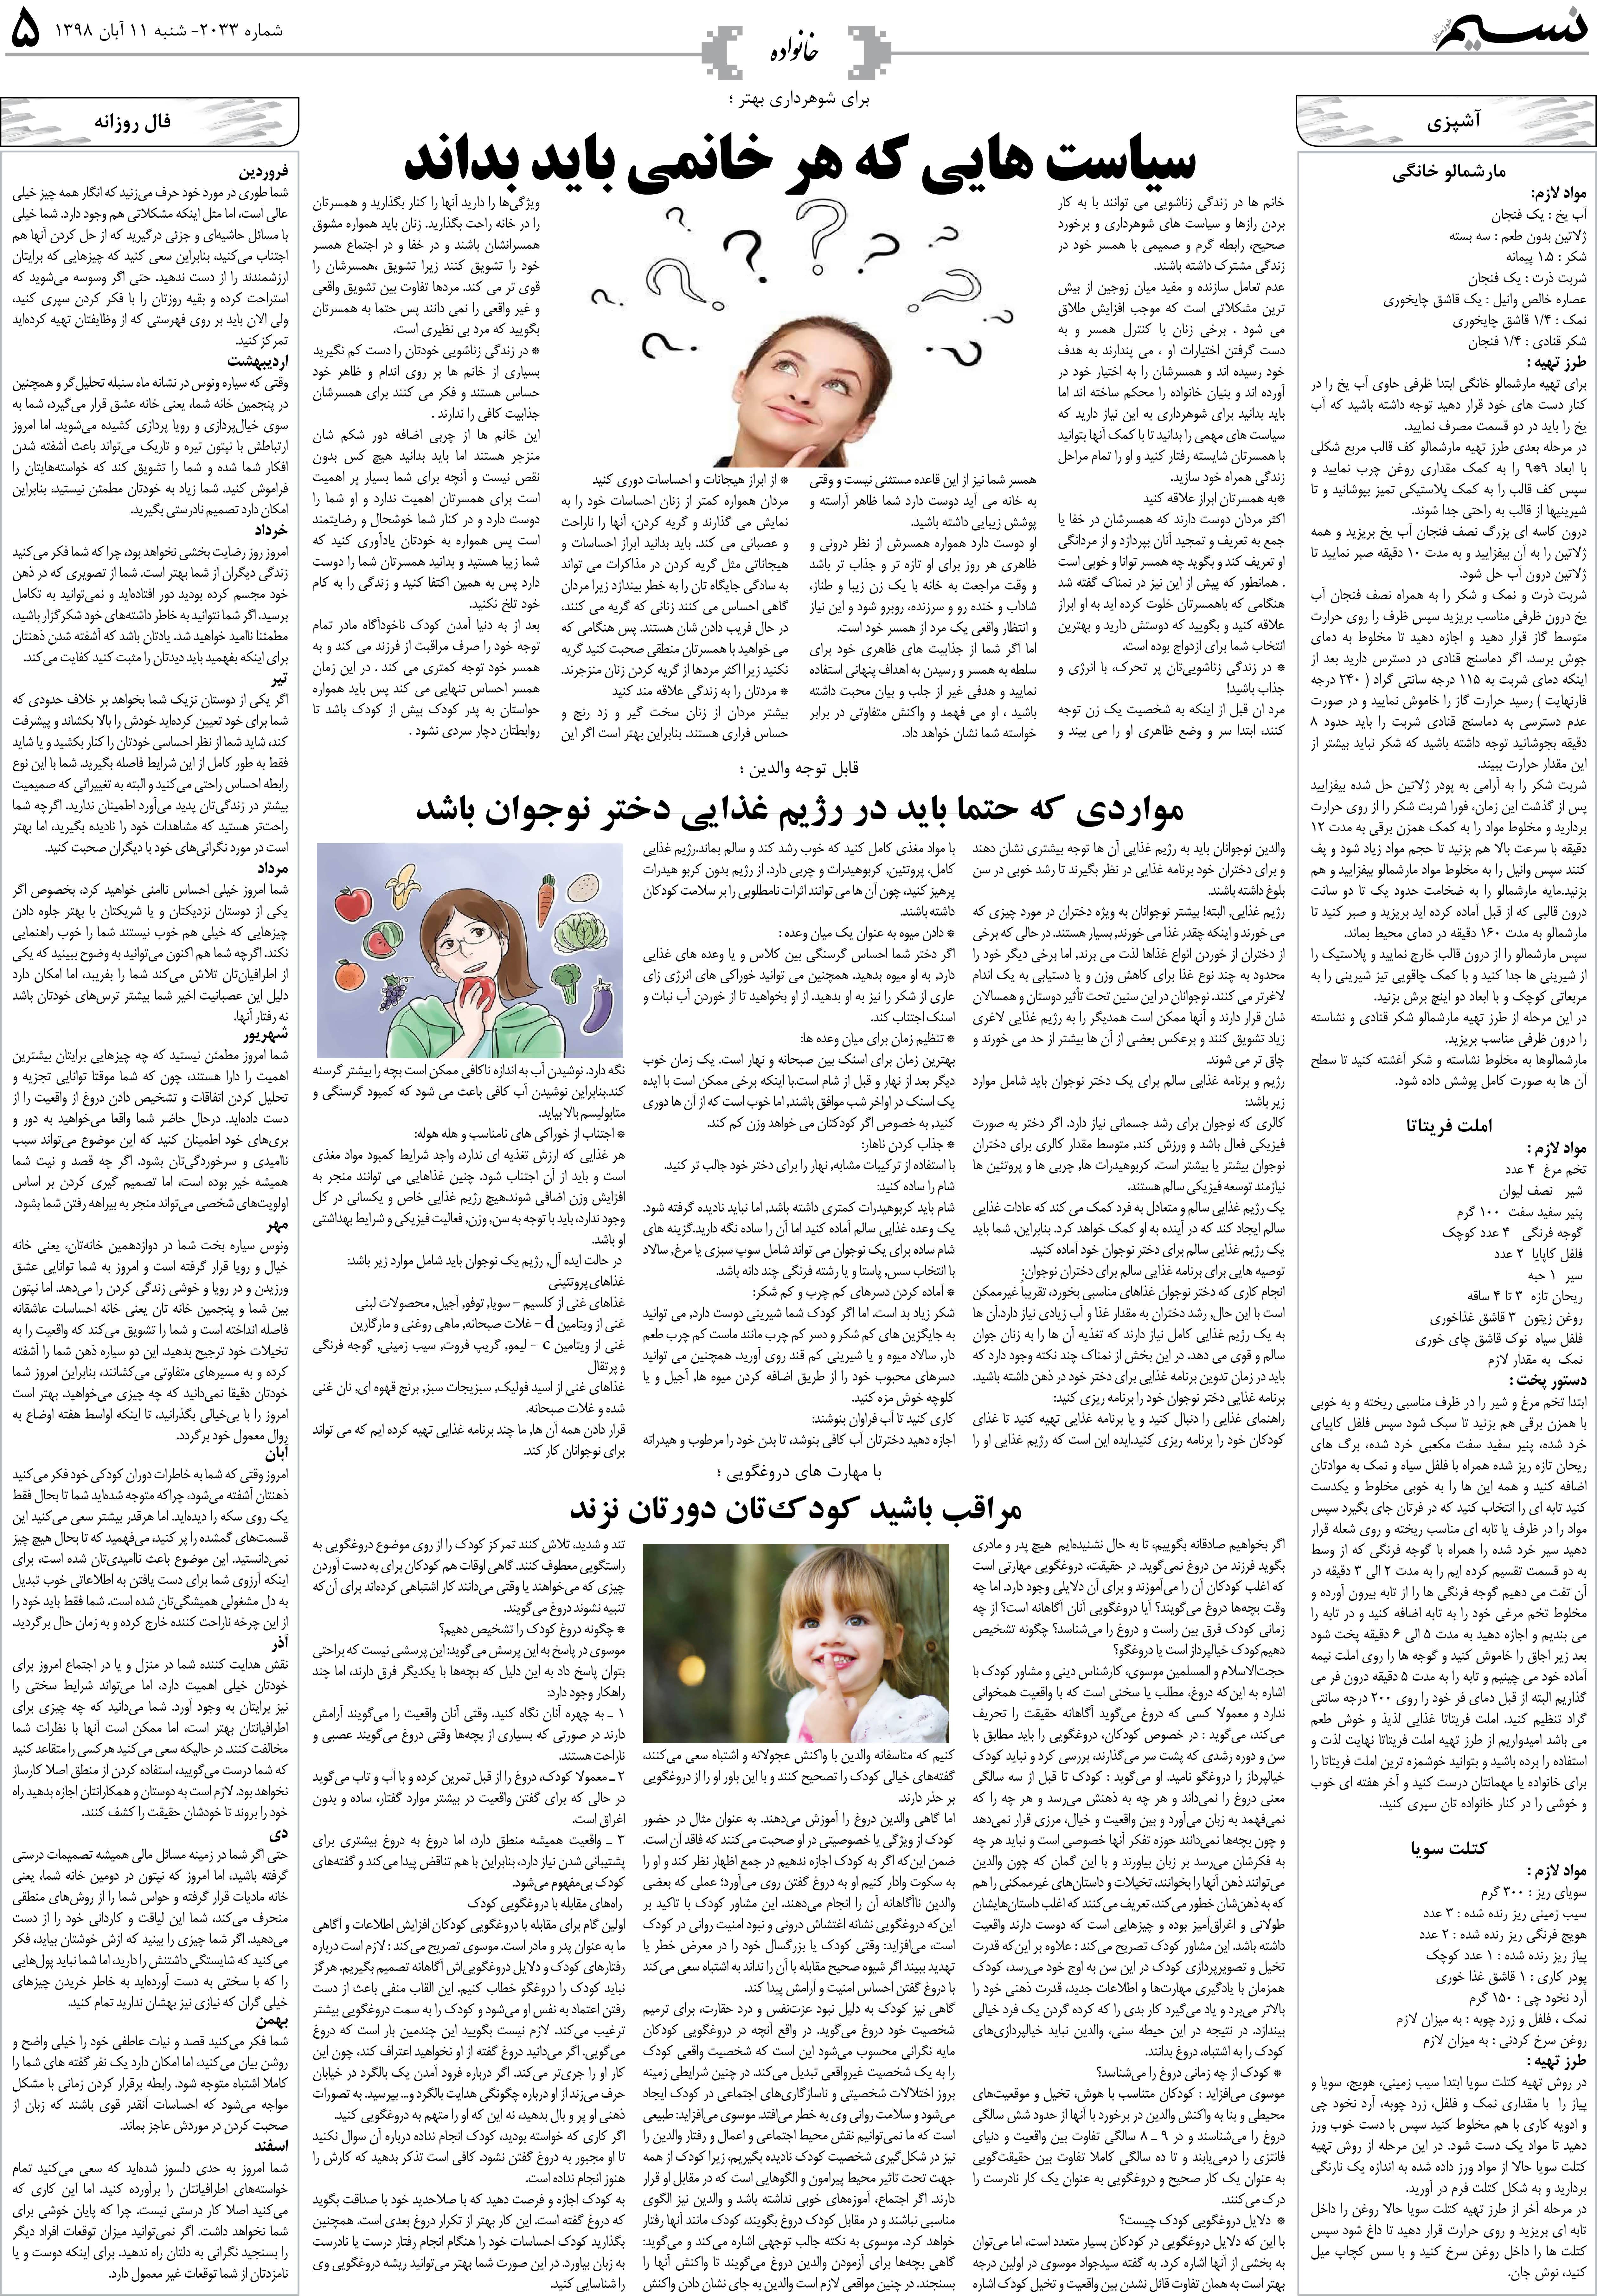 صفحه خانواده روزنامه نسیم شماره 2033